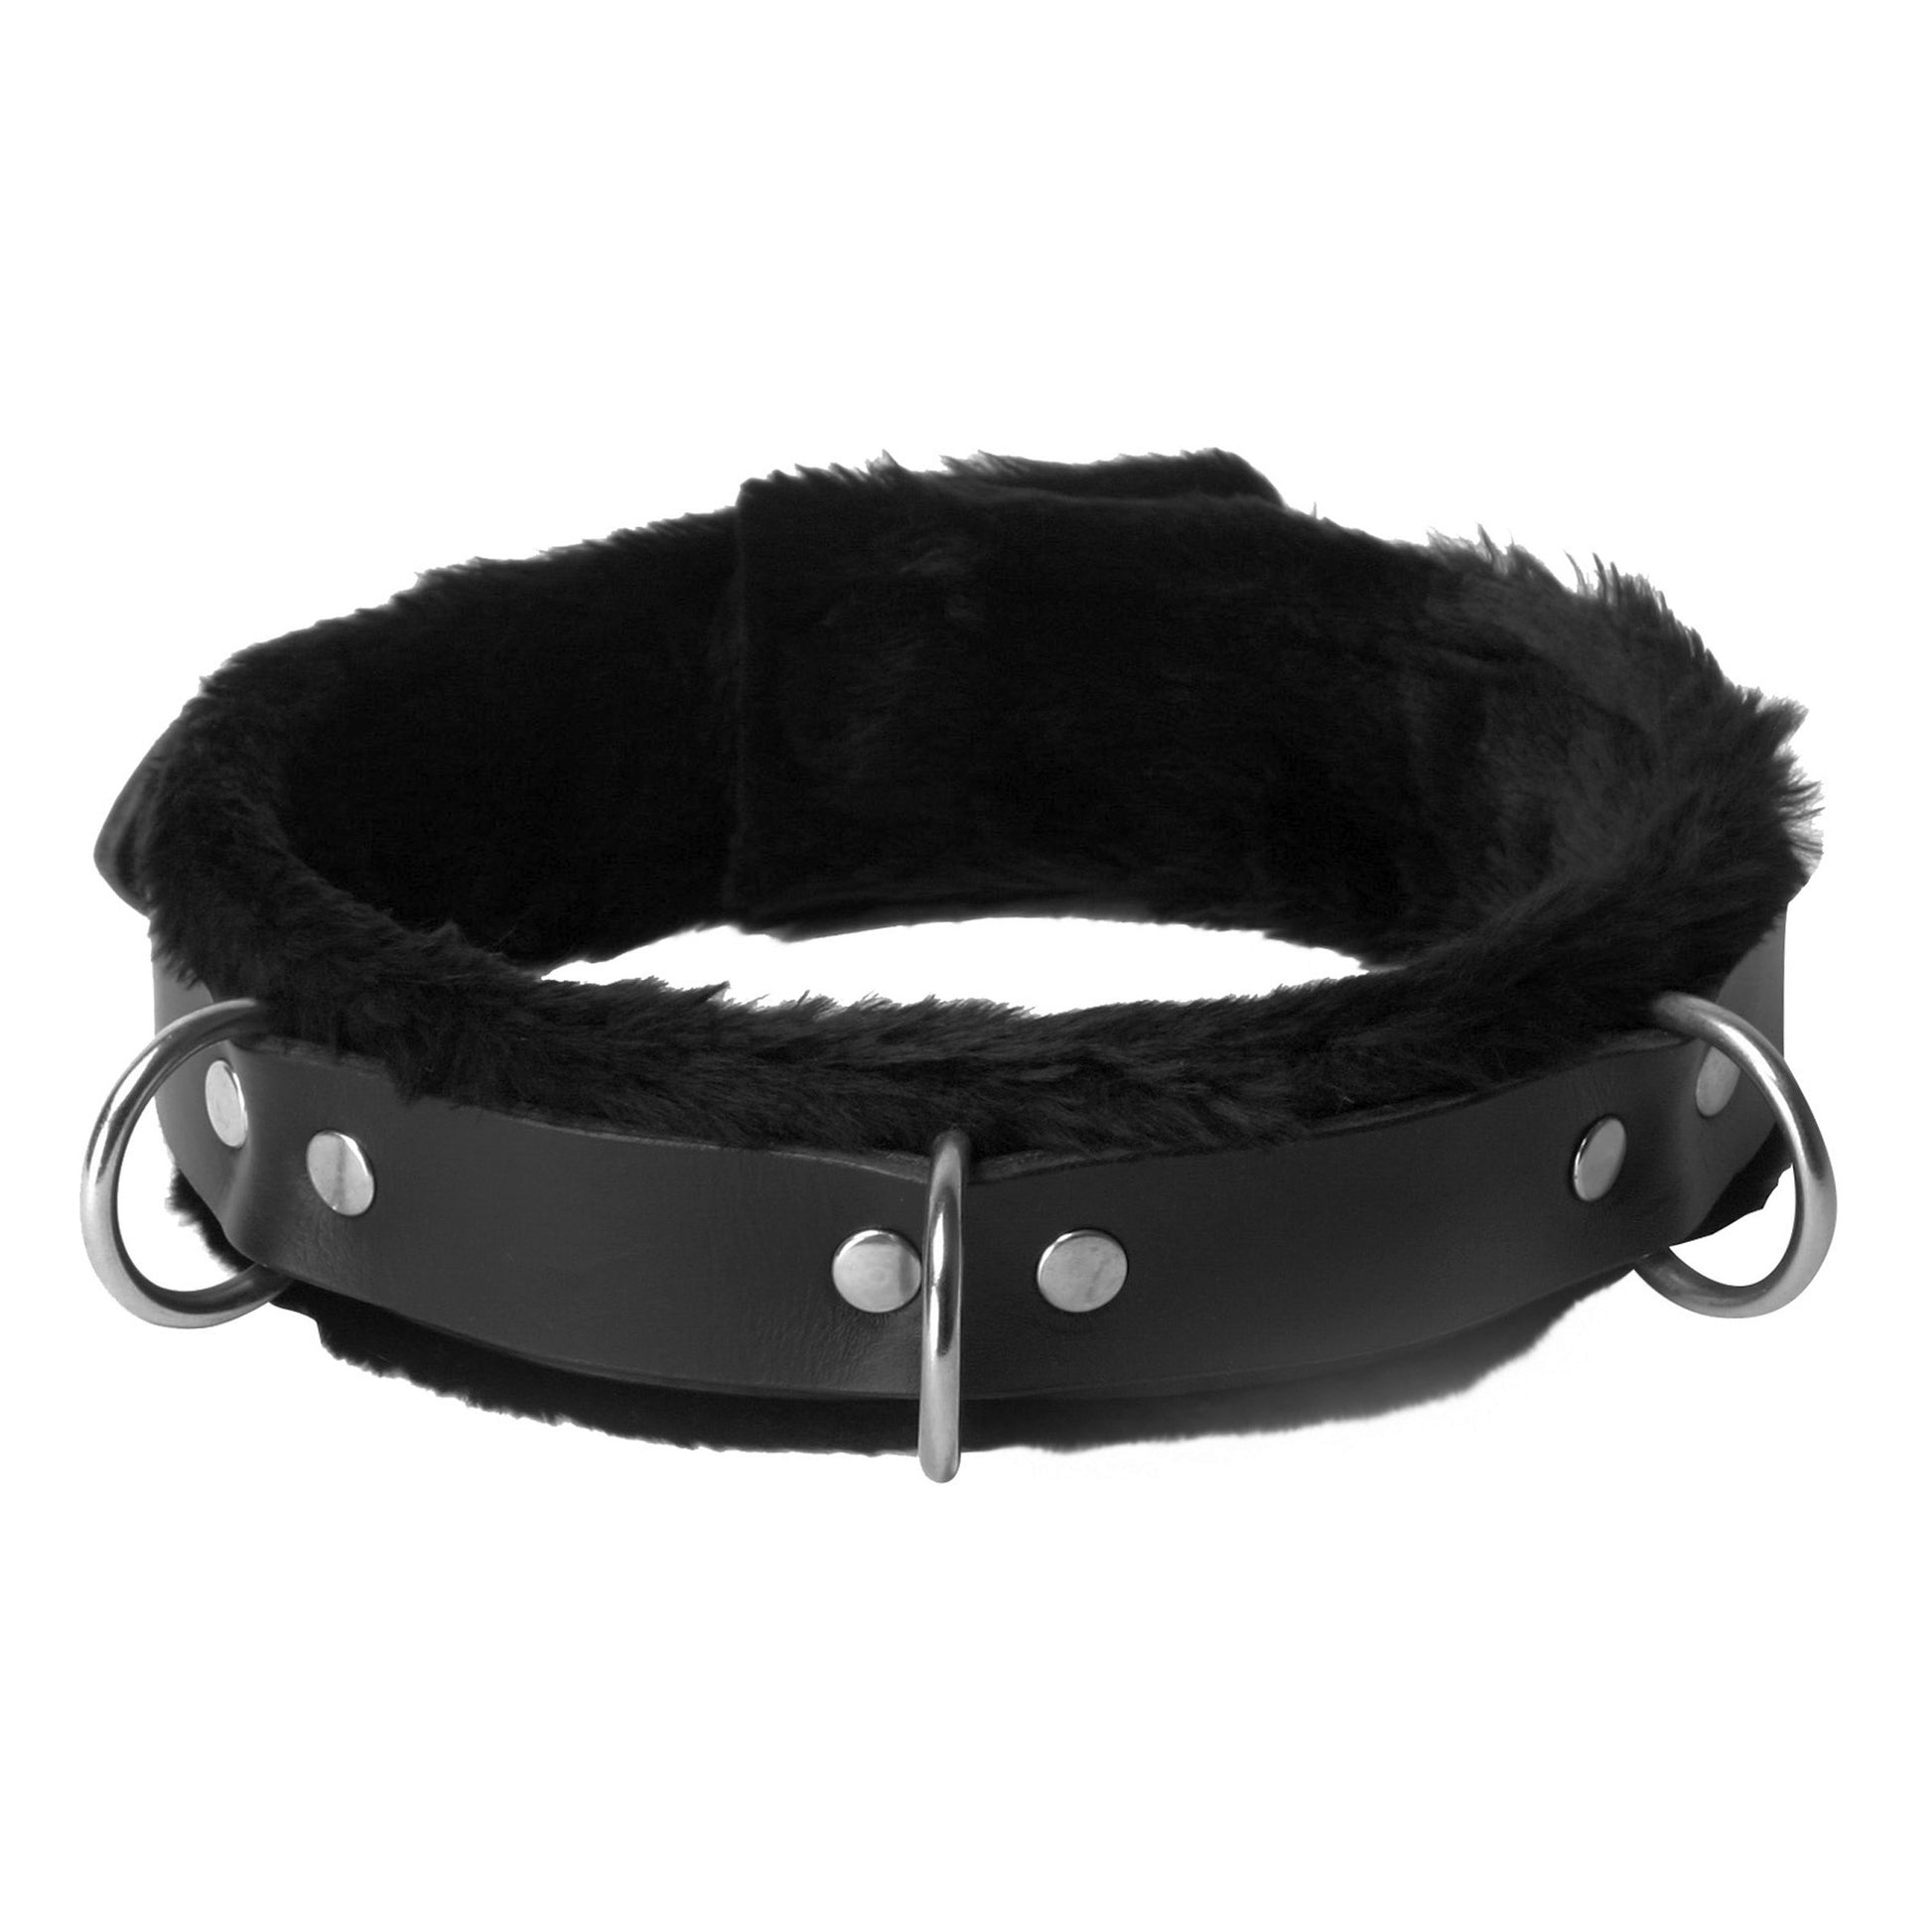 Fur Lined Leather Bondage Essentials Kit - UABDSM